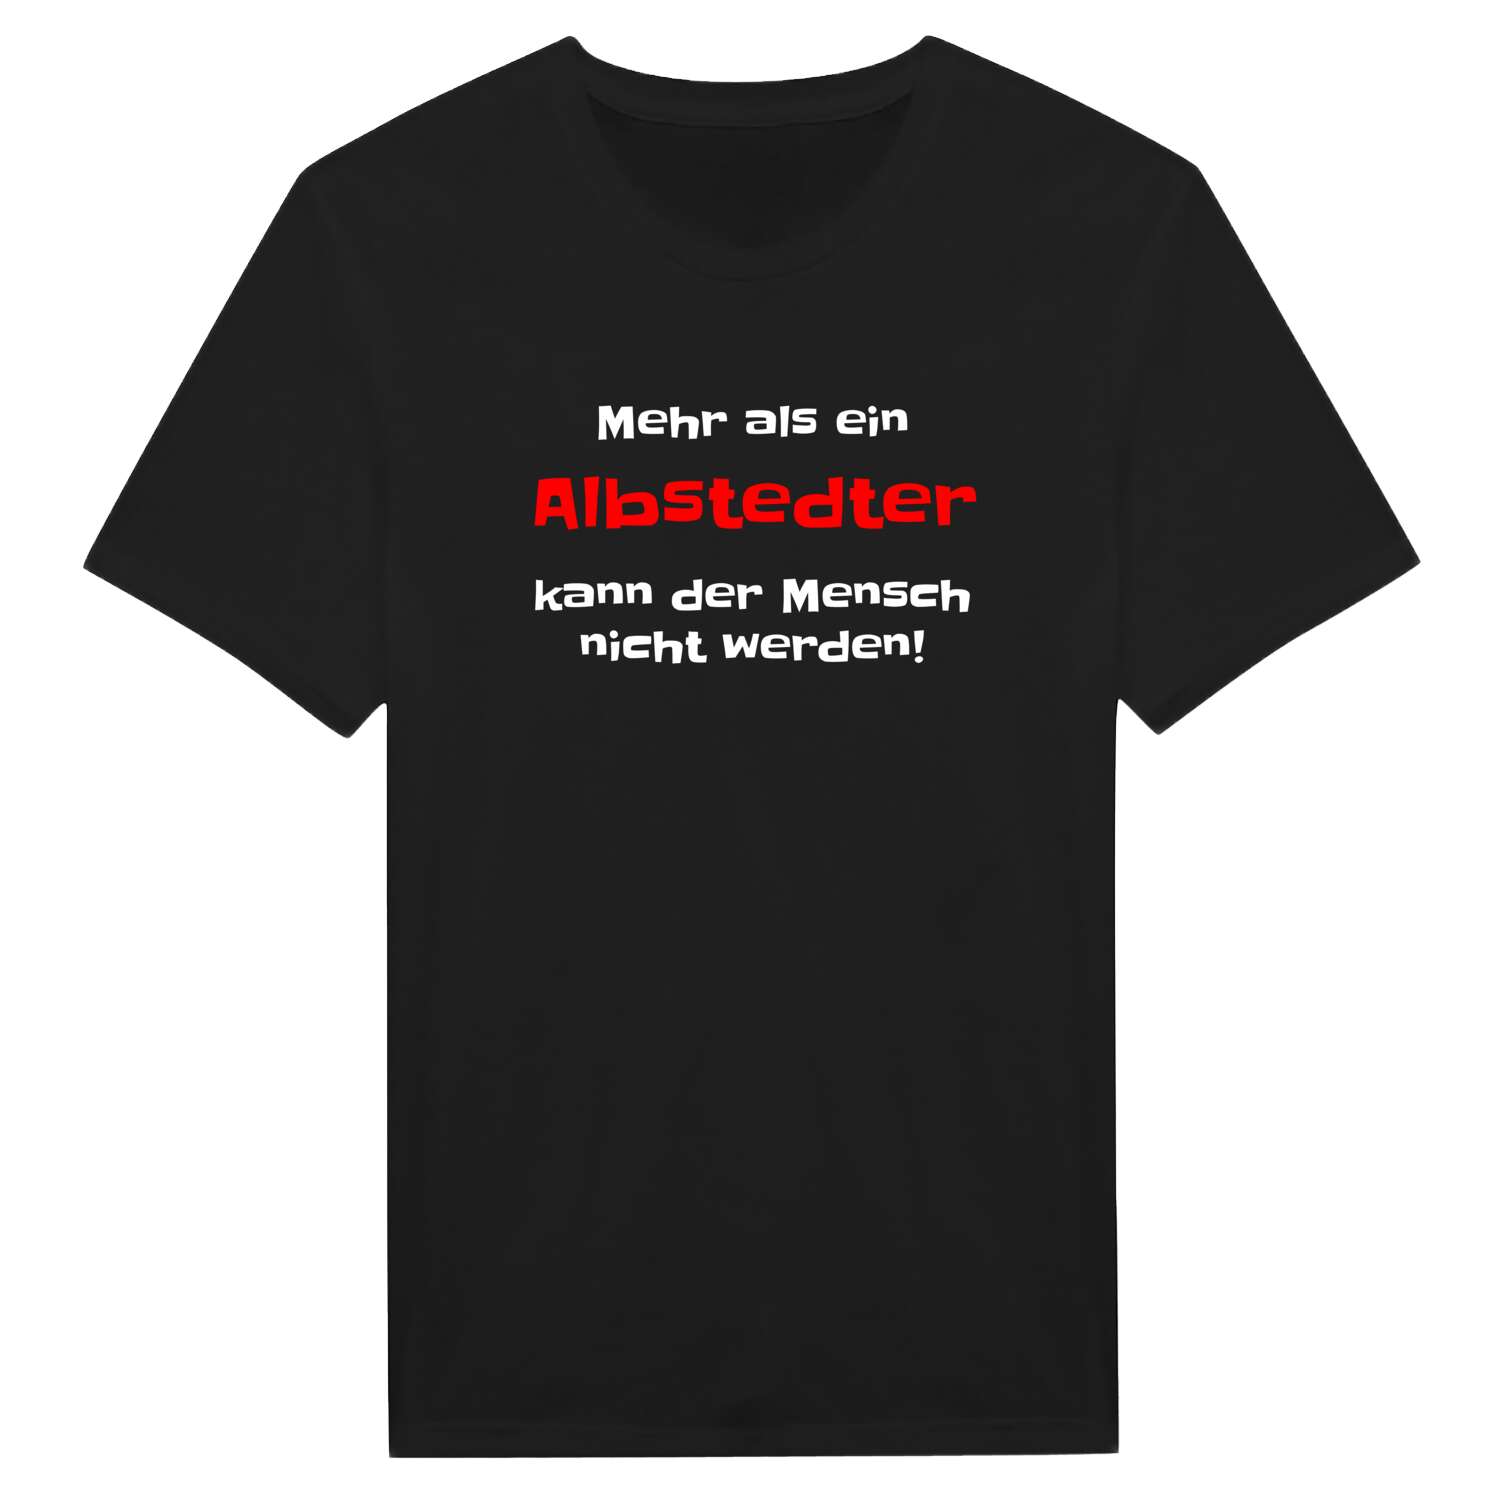 Albstedt T-Shirt »Mehr als ein«